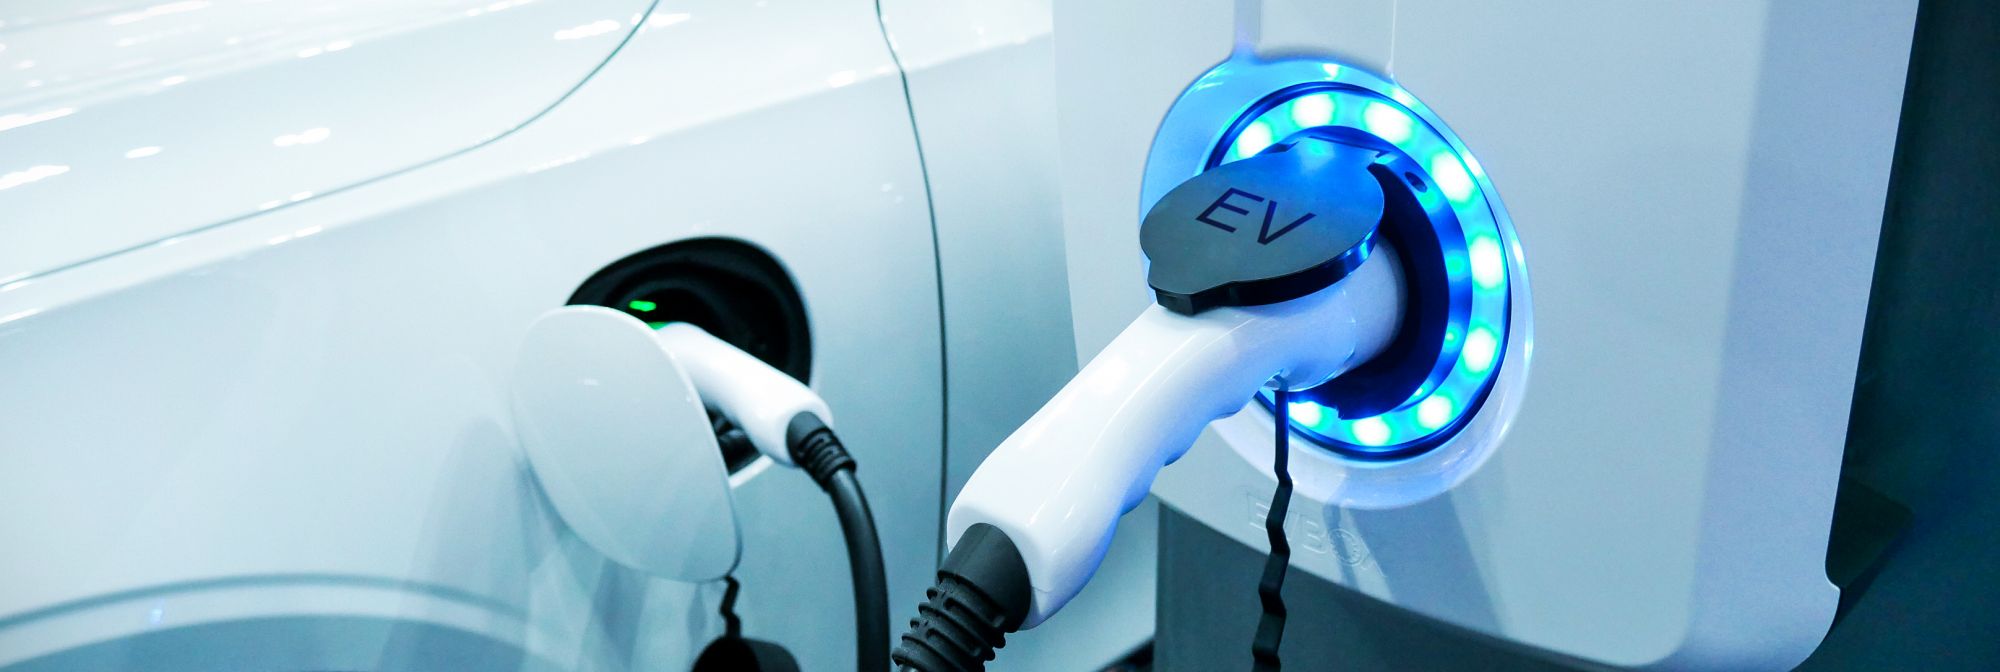 Власти вложатся в зарядки для электромобилей